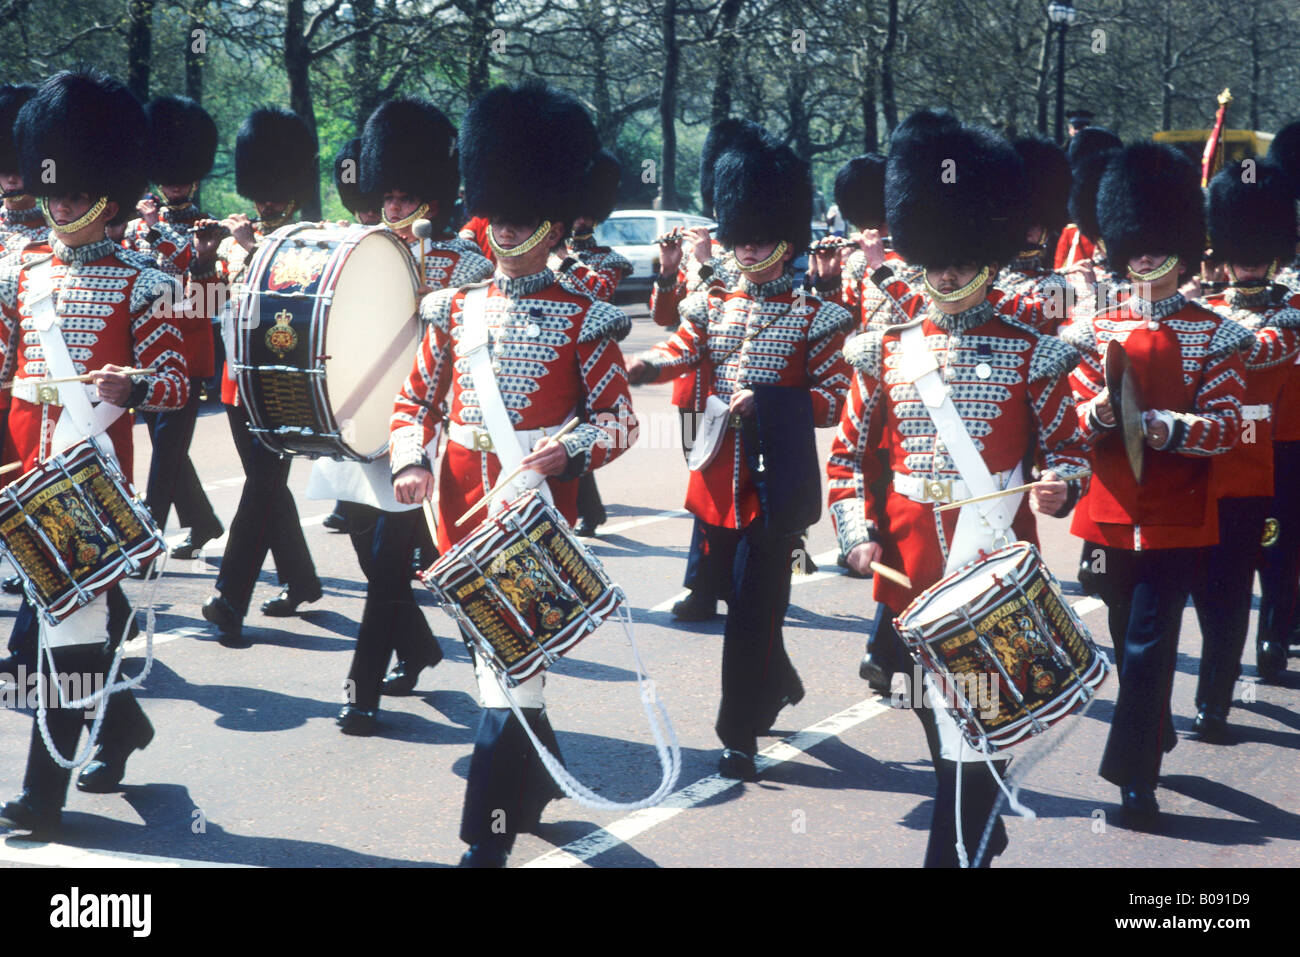 Grenadier Guards Band musiciens marchant le Mall Londres Angleterre Royaume-Uni British Army militaire uniforme de cérémonie cérémonie tambours Banque D'Images